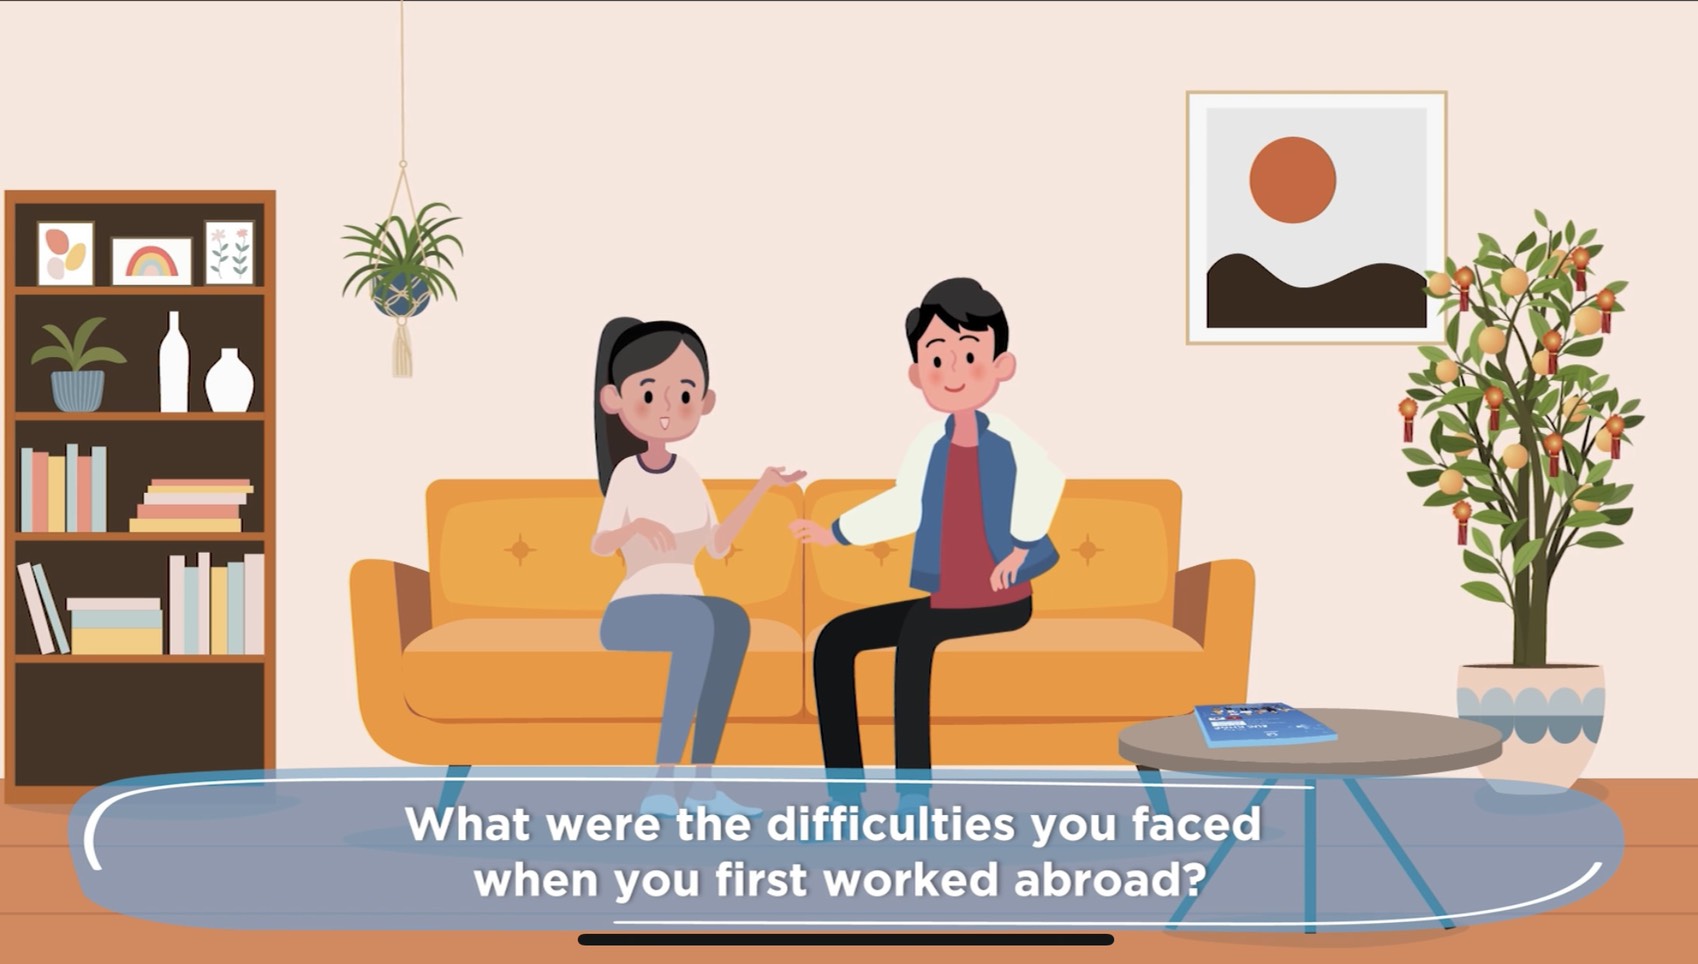 Video 1: Giới thiệu các video giáo dục truyền thông nâng cao sức khỏe cho người lao động đi làm việc ở nước ngoài